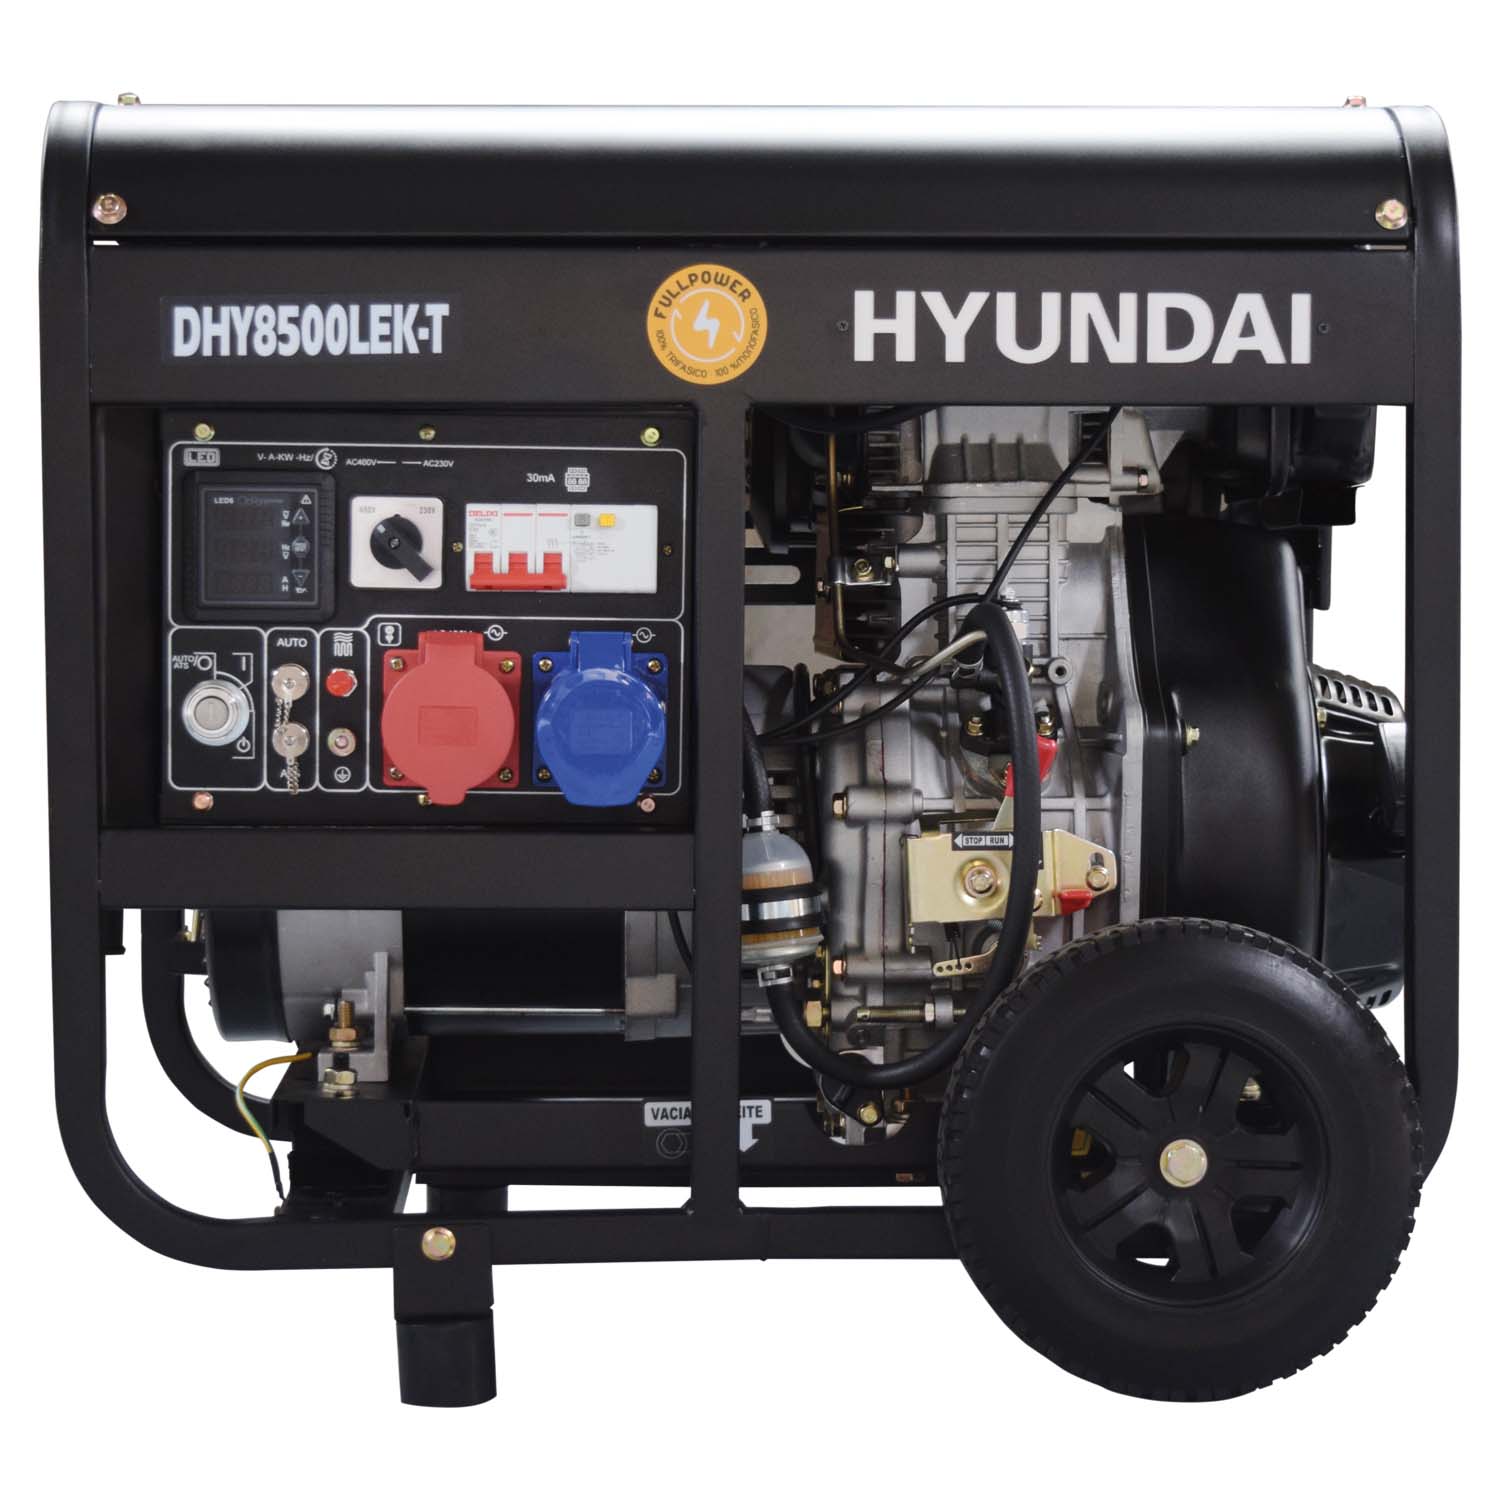 Hyundai diesel Generator 5,7 kW / 7,9 KVA